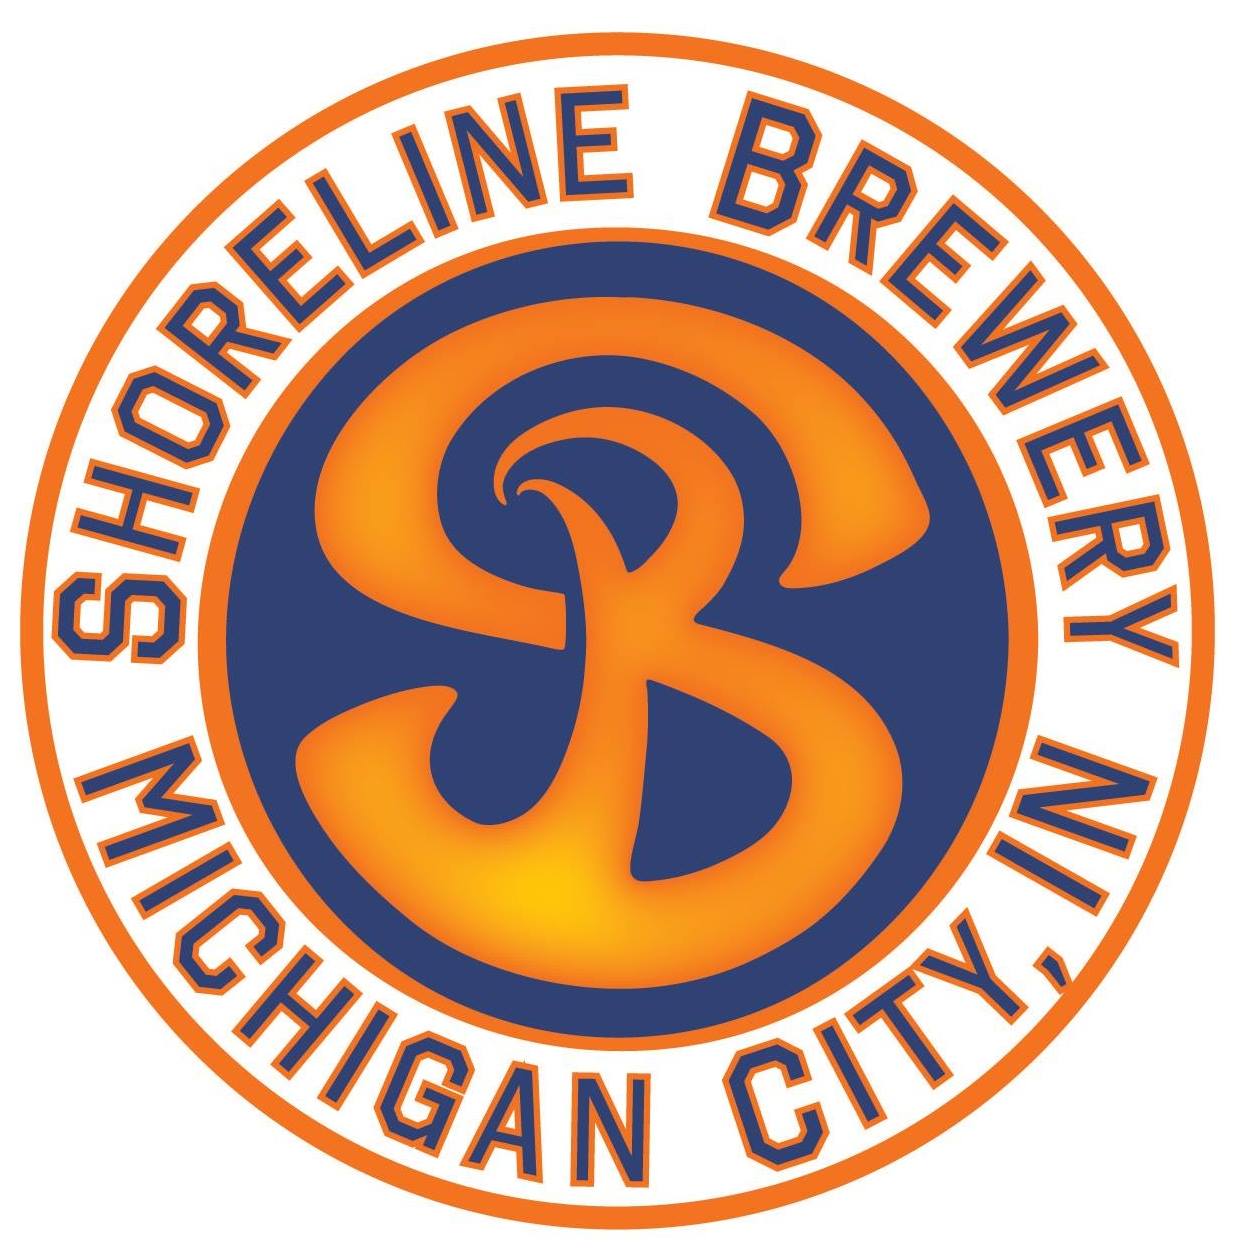 Shoreline Brewery